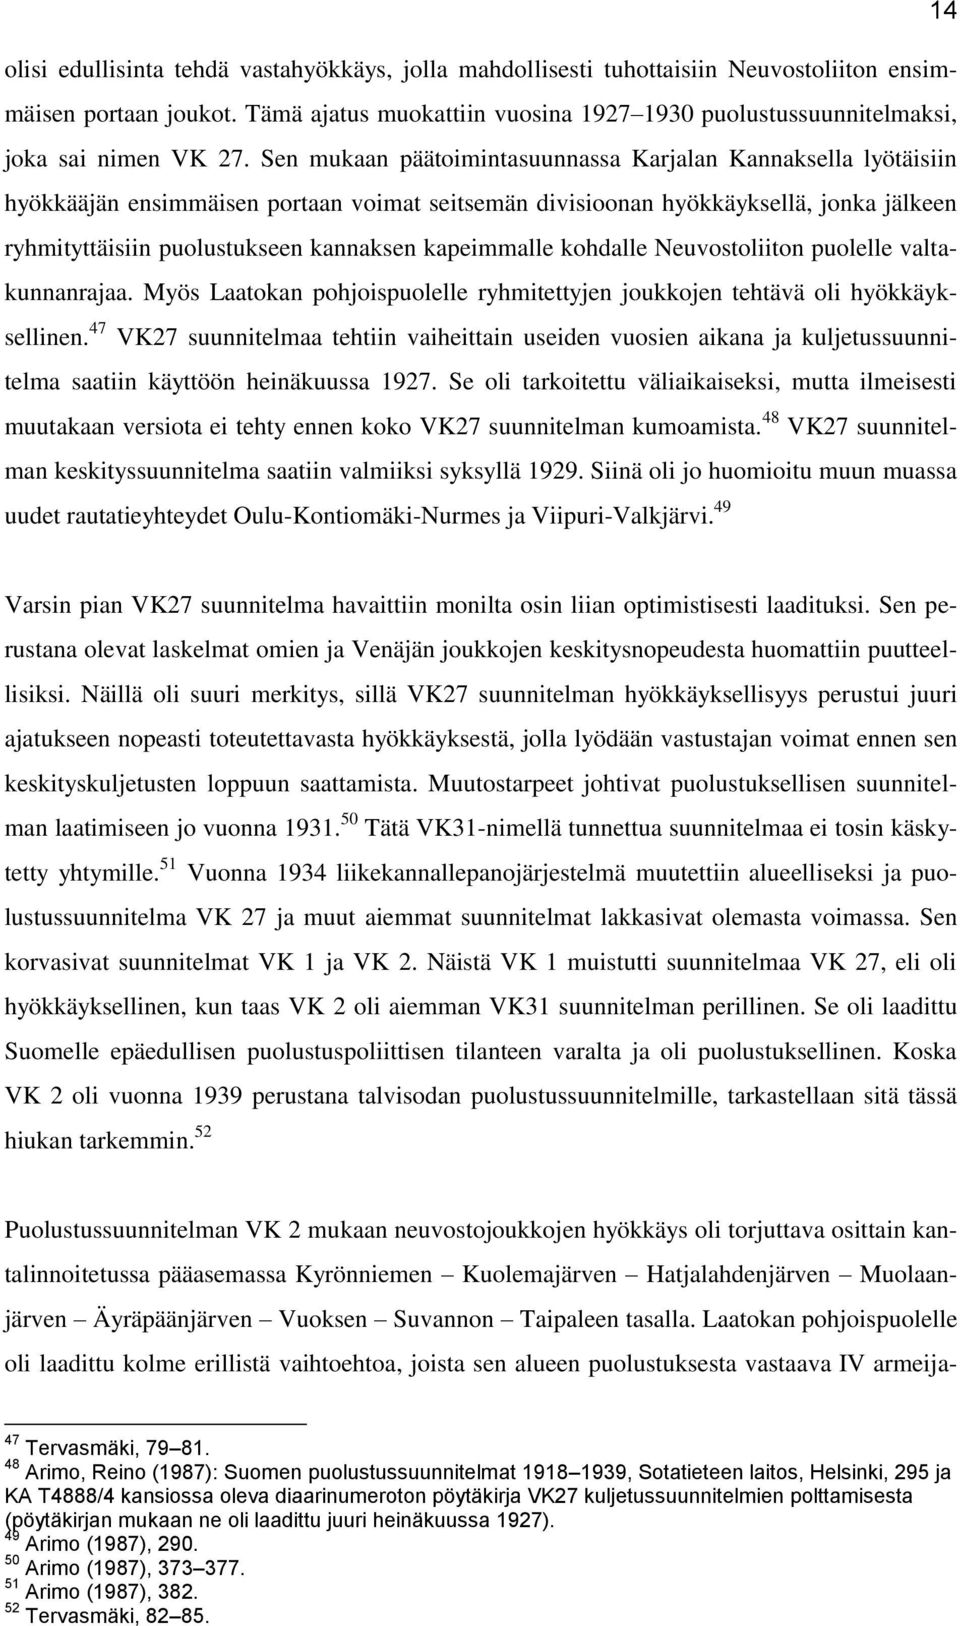 Sen mukaan päätoimintasuunnassa Karjalan Kannaksella lyötäisiin hyökkääjän ensimmäisen portaan voimat seitsemän divisioonan hyökkäyksellä, jonka jälkeen ryhmityttäisiin puolustukseen kannaksen